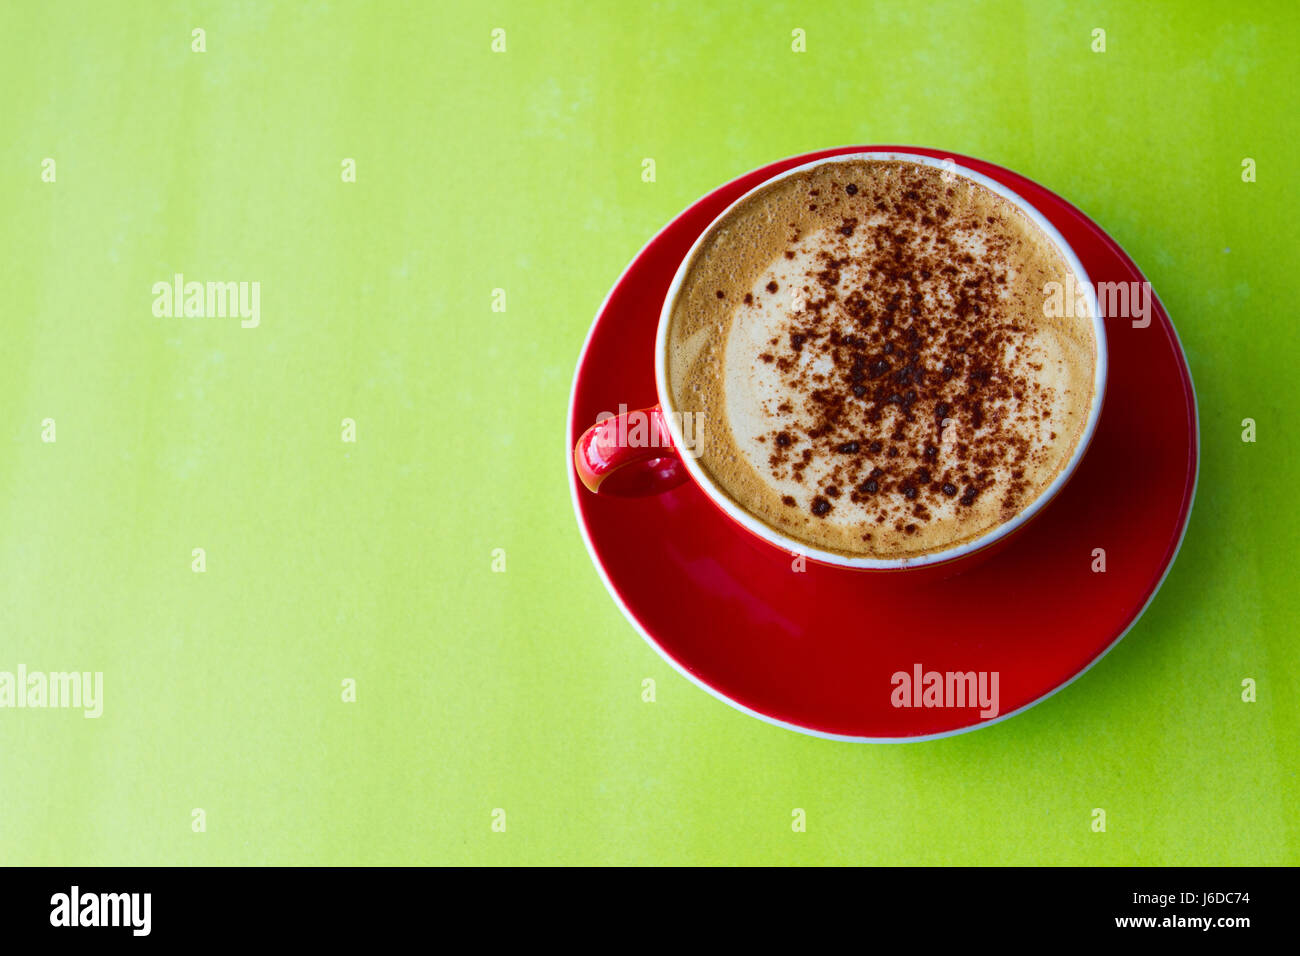 Blick von oben auf einer schaumigen Tasse Cappuccino Kaffee in eine rote Tasse und Untertasse und auf eine bunte, grüne Fläche. Stockfoto